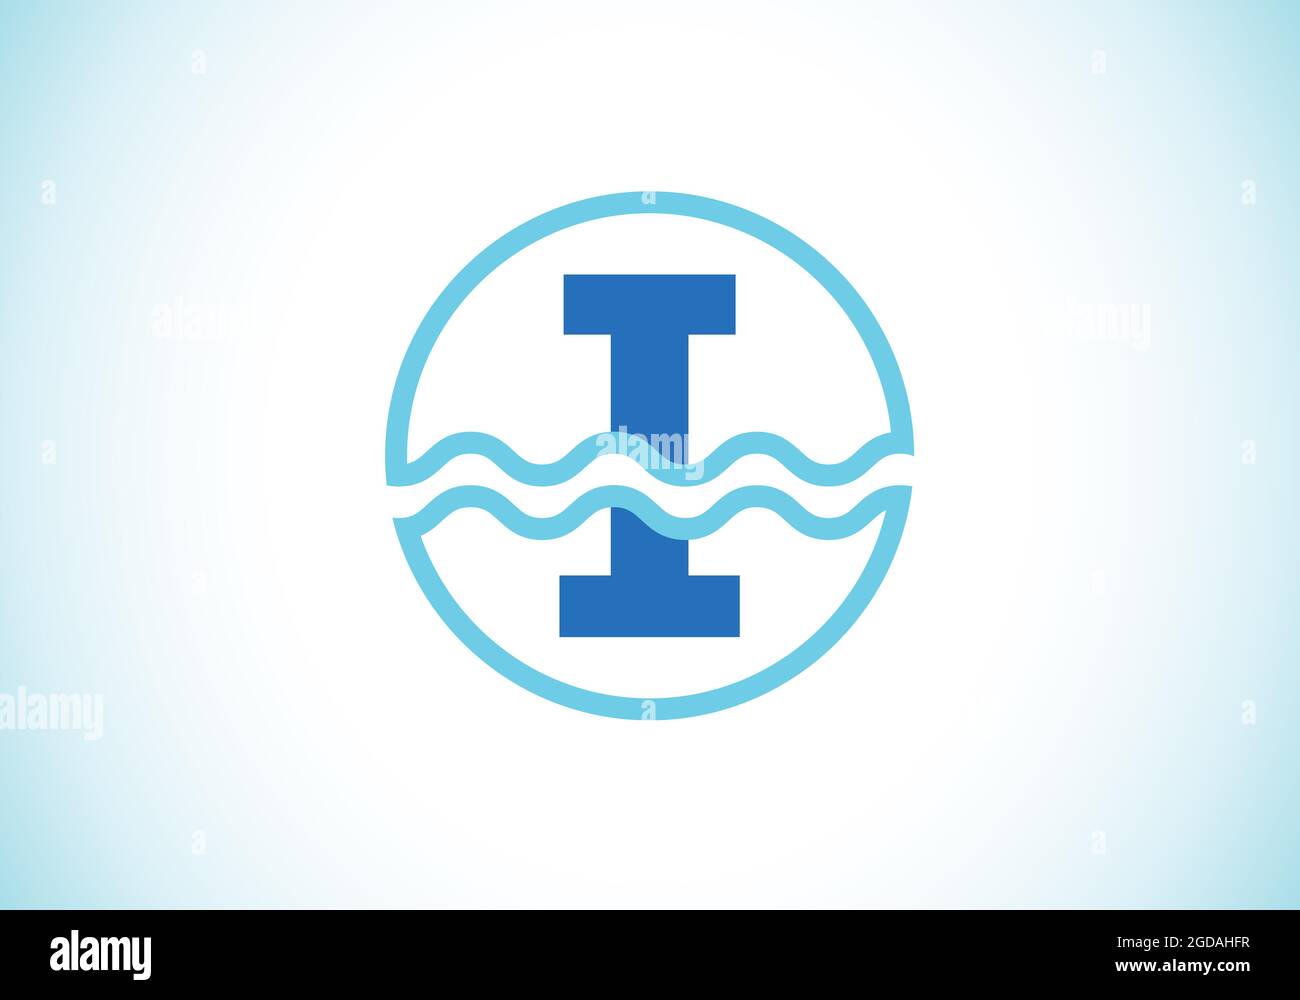 Initiale i monogramme alphabet dans un cercle avec des vagues d'eau. Logo vague d'eau. Logo pour l'océan, les affaires liées à la mer et l'identité de l'entreprise Illustration de Vecteur